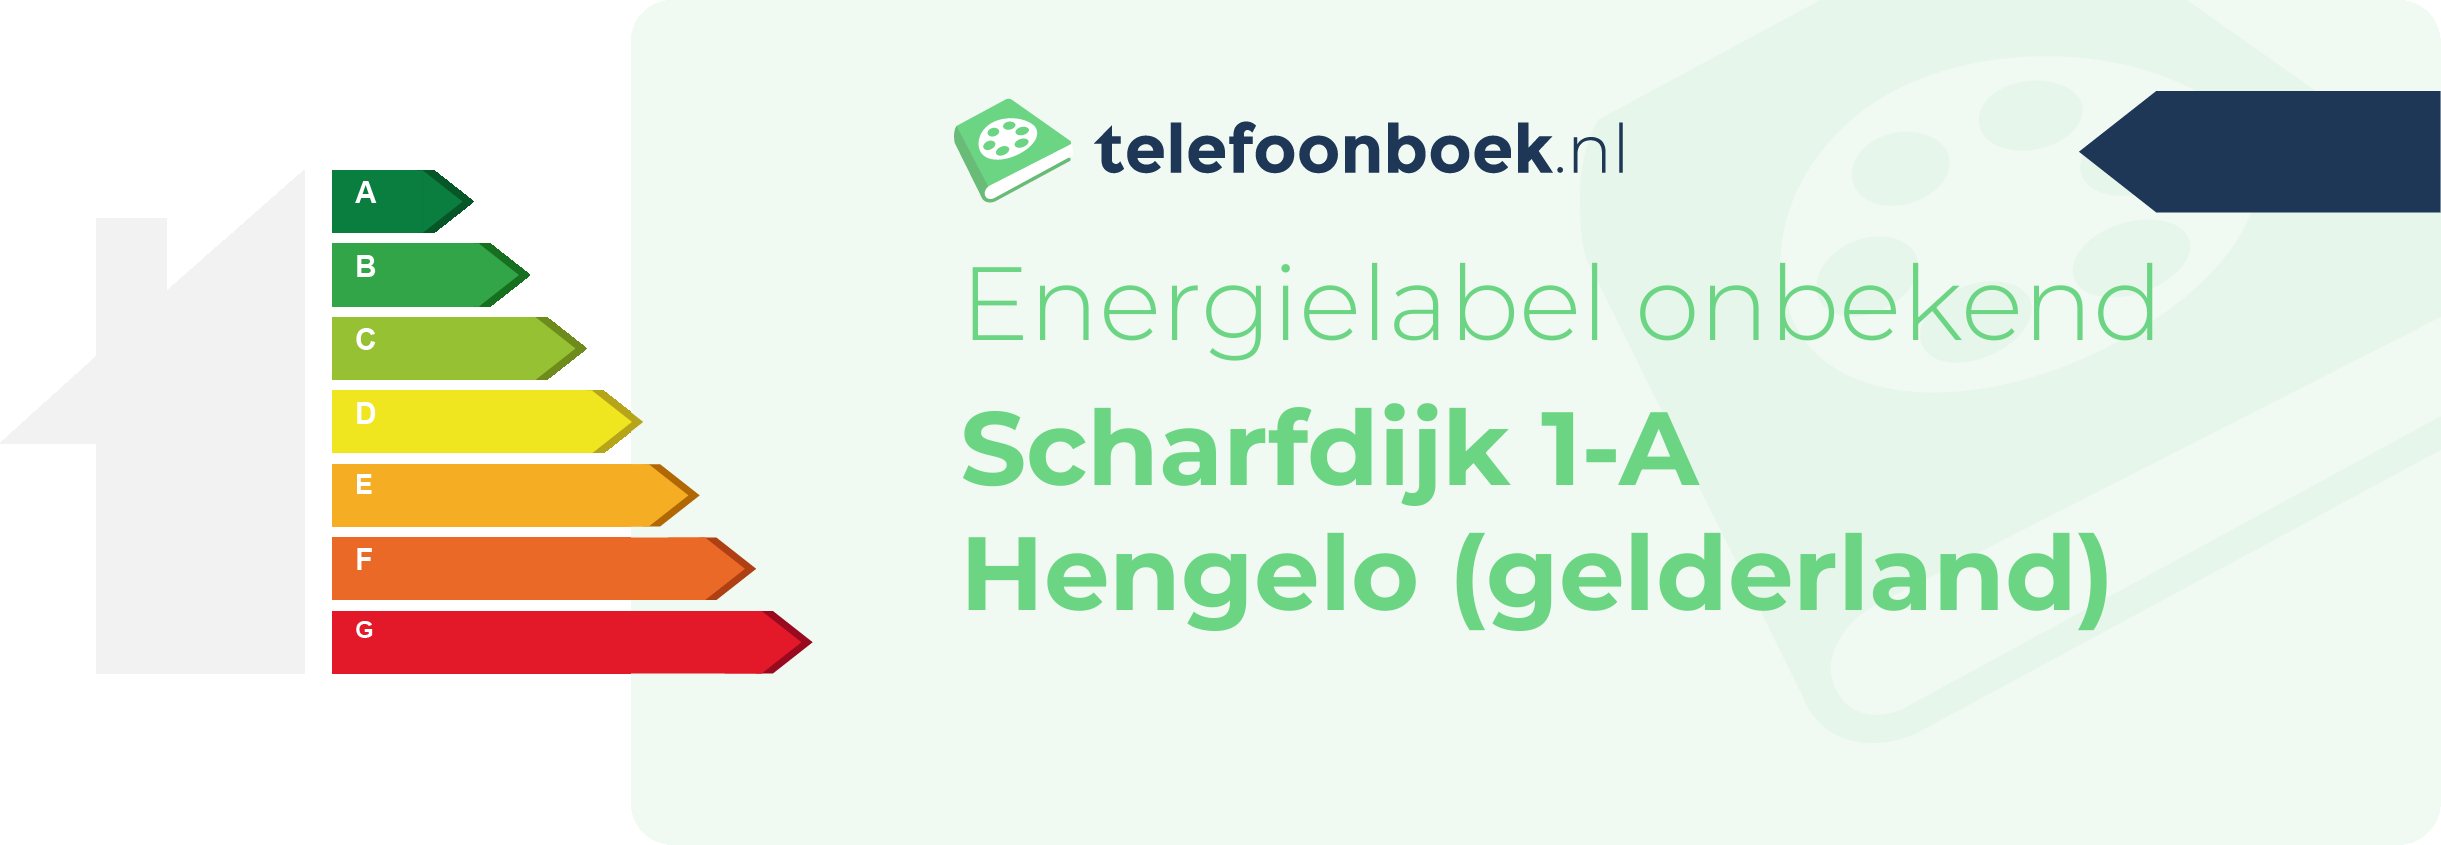 Energielabel Scharfdijk 1-A Hengelo (Gelderland)